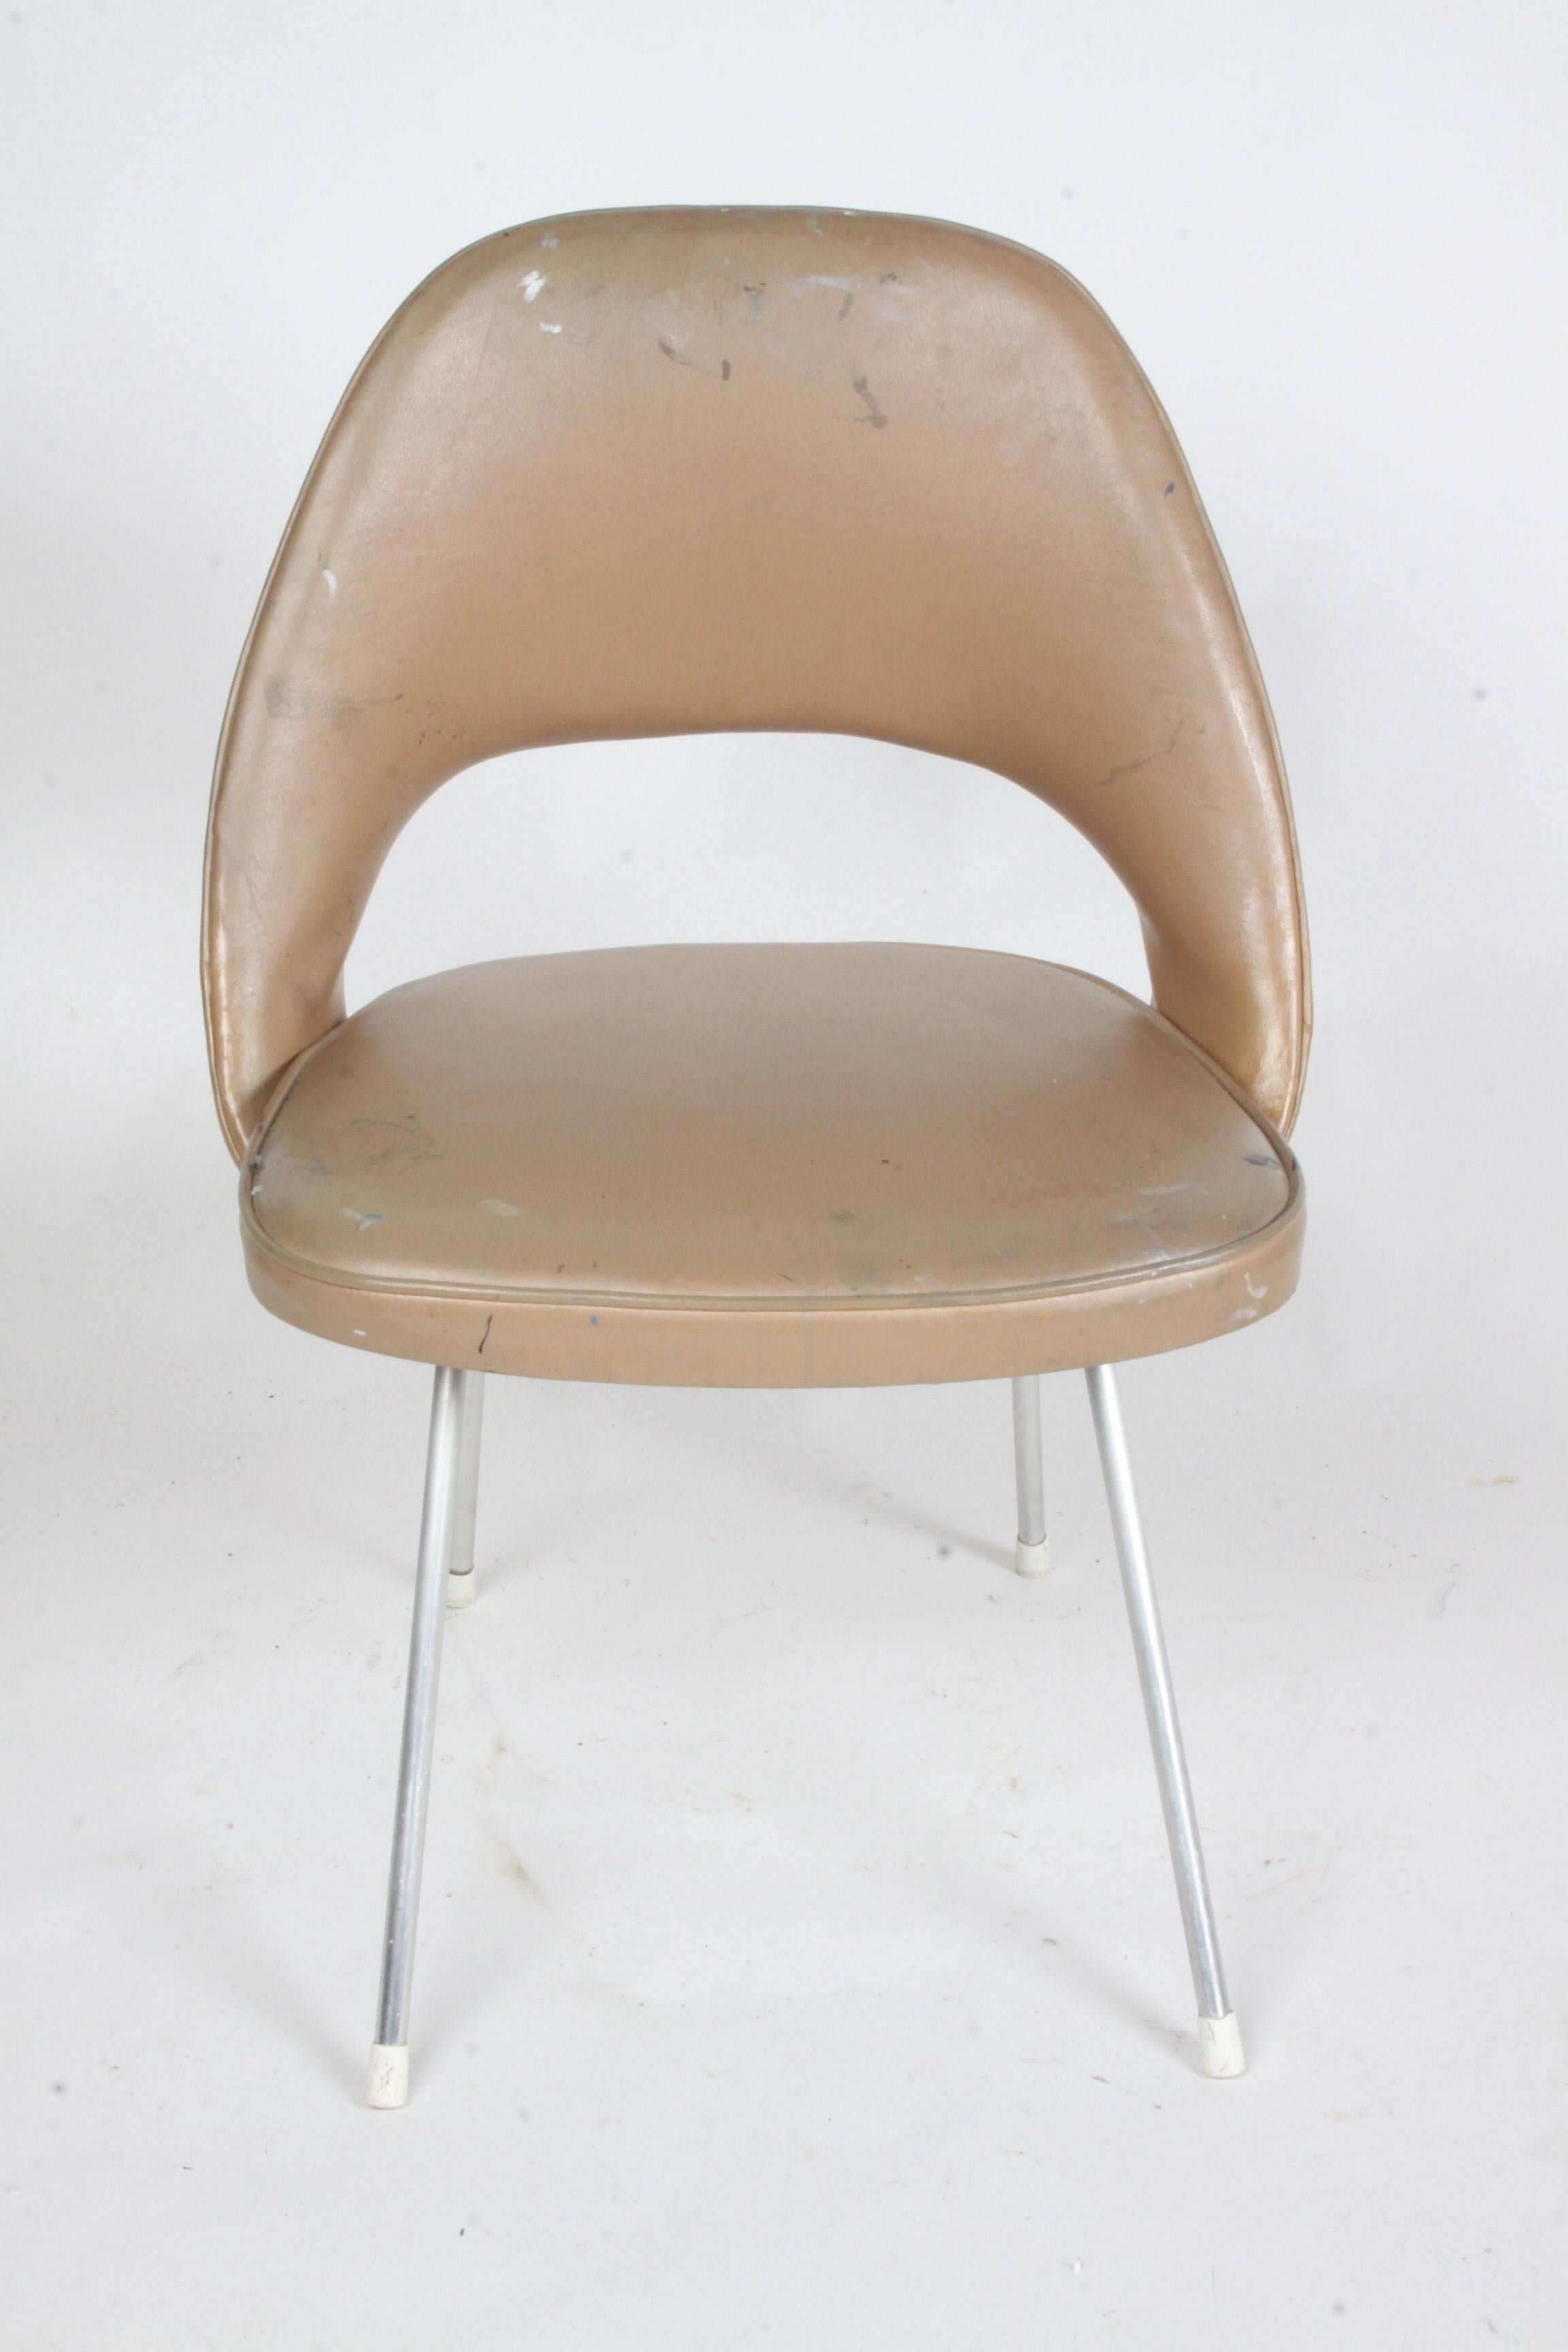 Frühe Version des Beistellstuhls von Eero Saarinen für Knoll mit frühem Etikett. Diese Version hat Aluminiumbeine und eine frühe Sockelkonfiguration, im Gegensatz zu den späteren segmentierten Beinen. Der Stuhl sollte wiederhergestellt werden, die